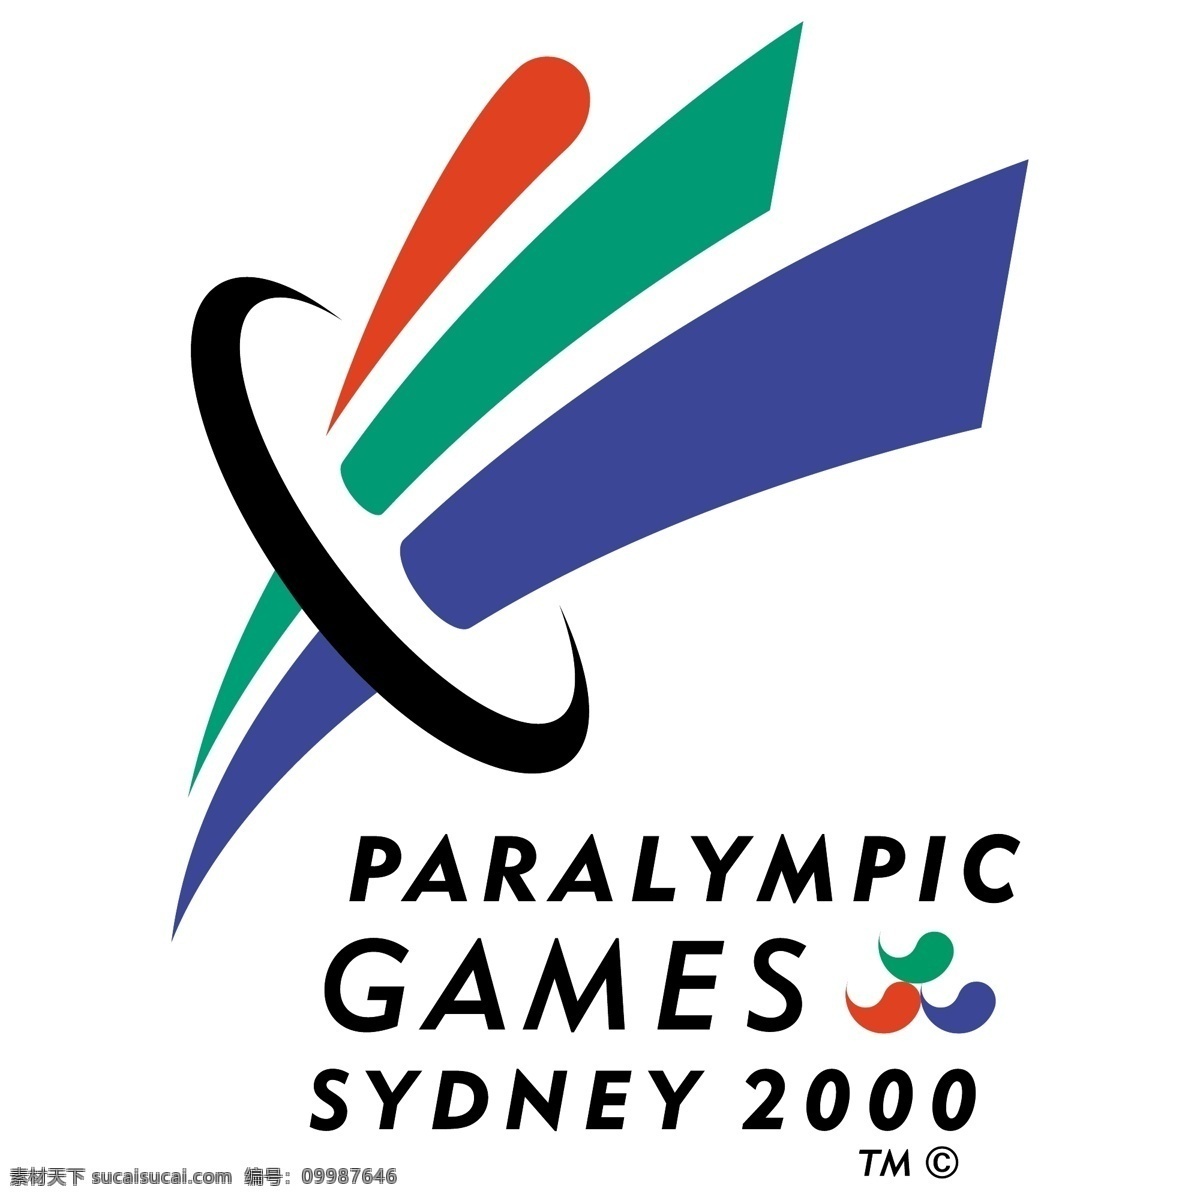 悉尼 残奥会 2000 免费 标志 psd源文件 logo设计